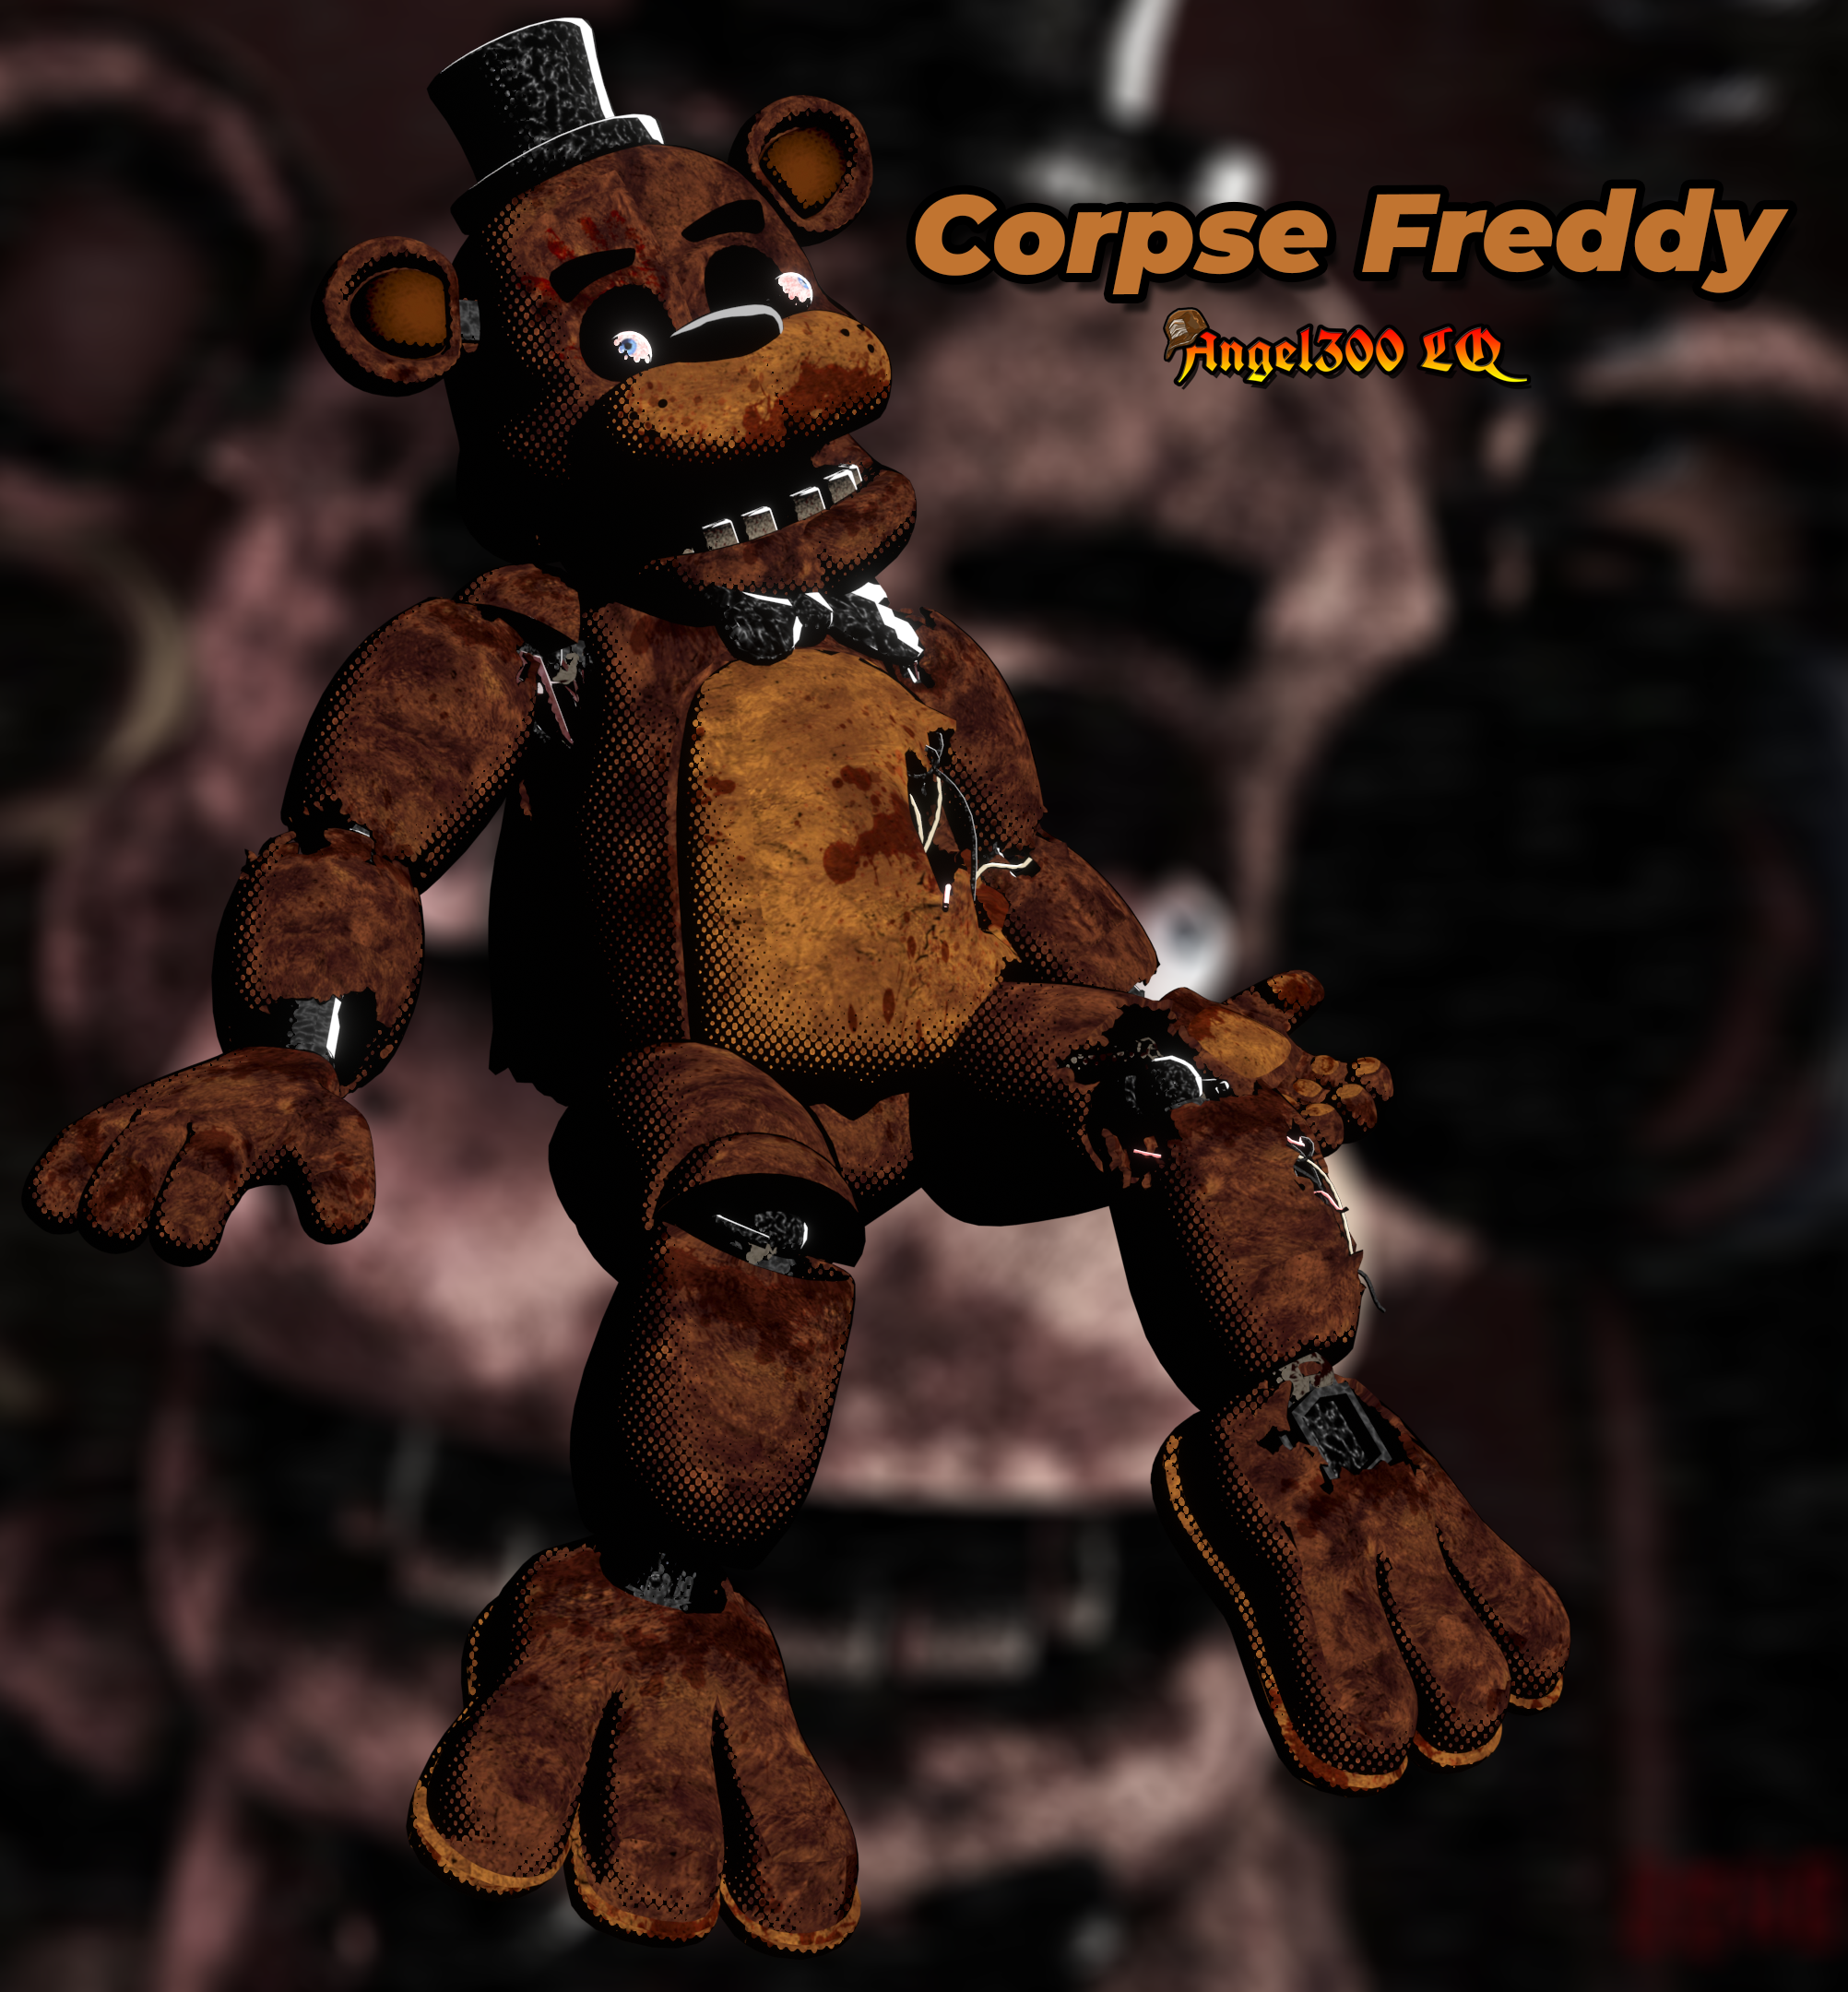 Corpse Freddy FNAF 1 Render Blender by Angel300LQ on DeviantArt